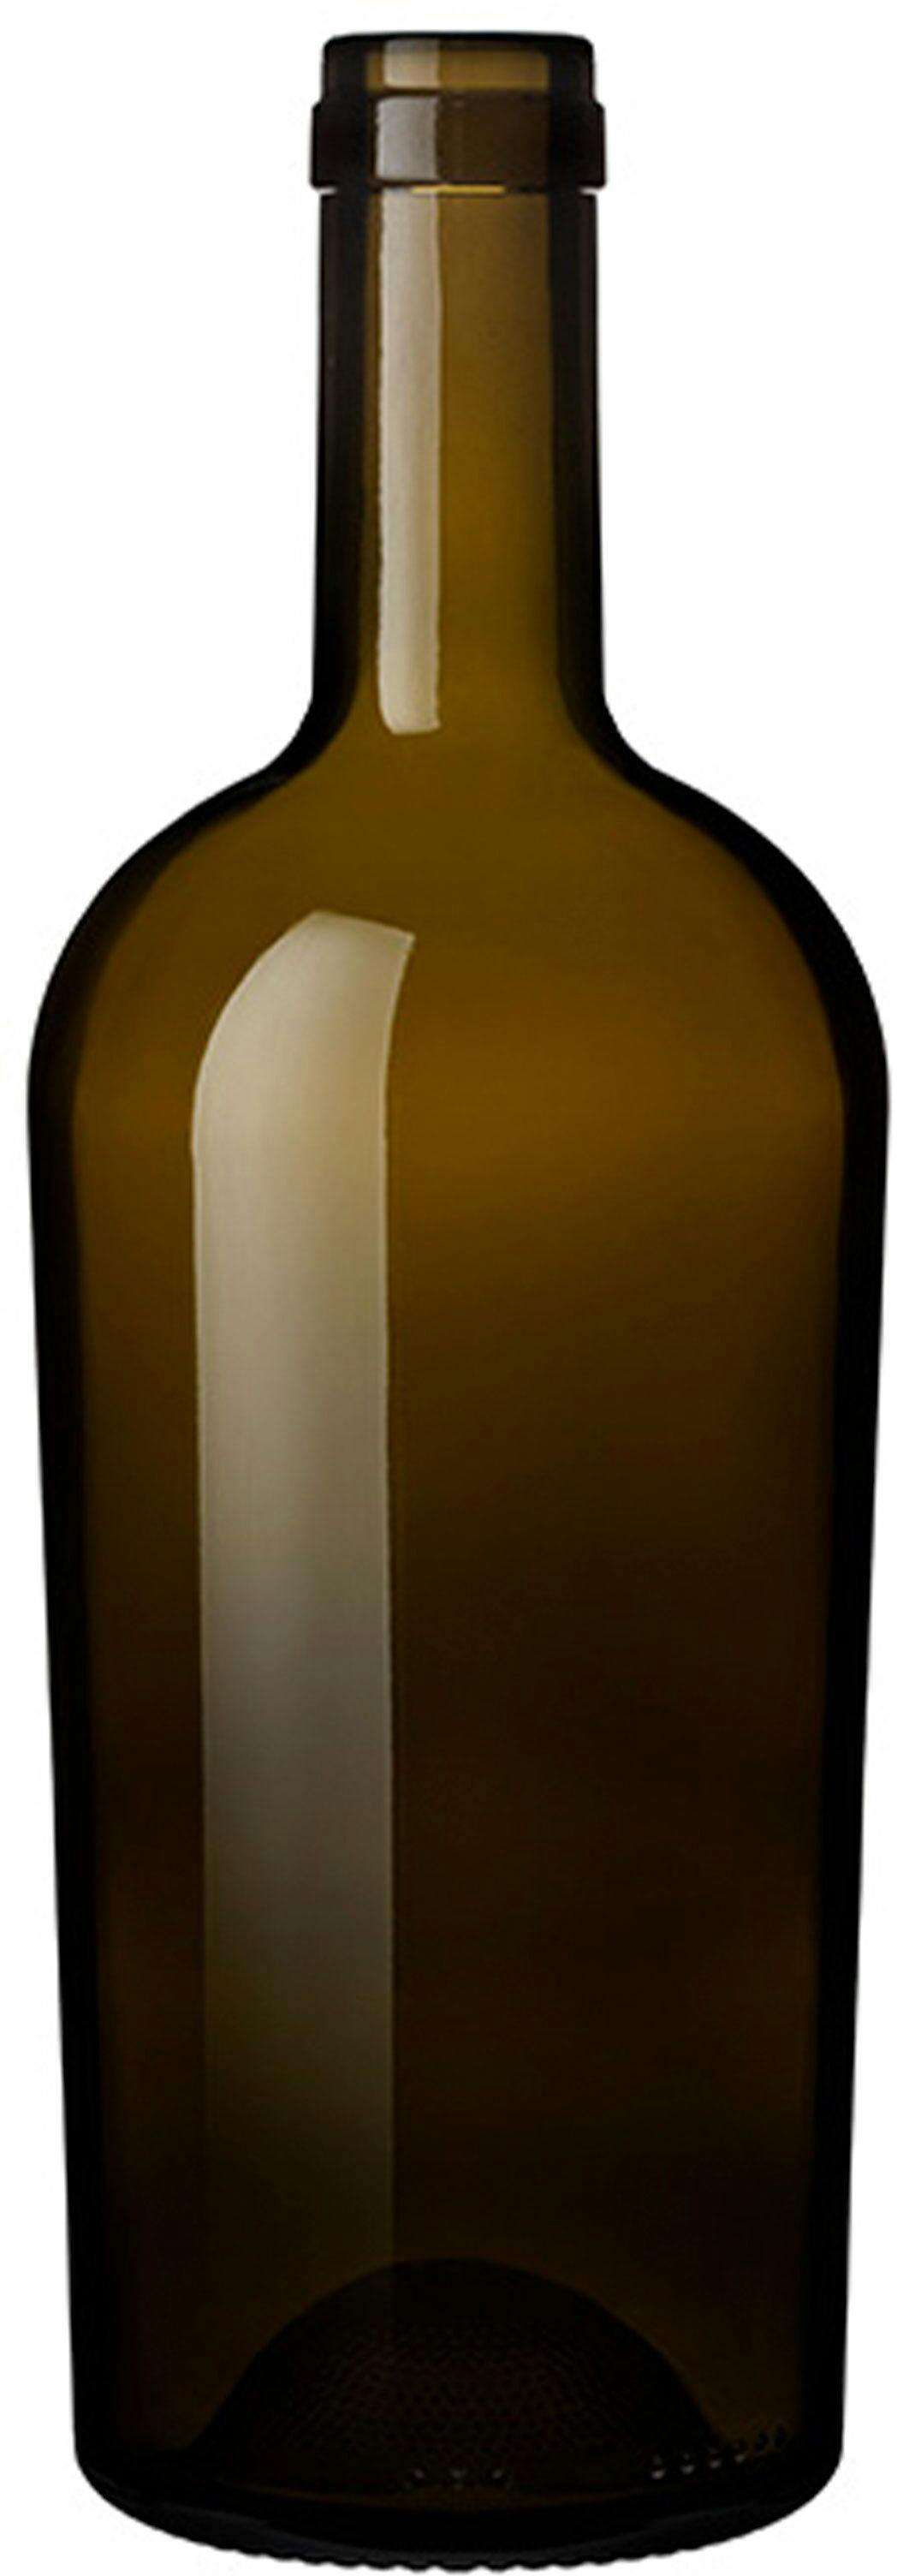 Bottle REGINE  WINE CLUB 750 ml BG-Cork